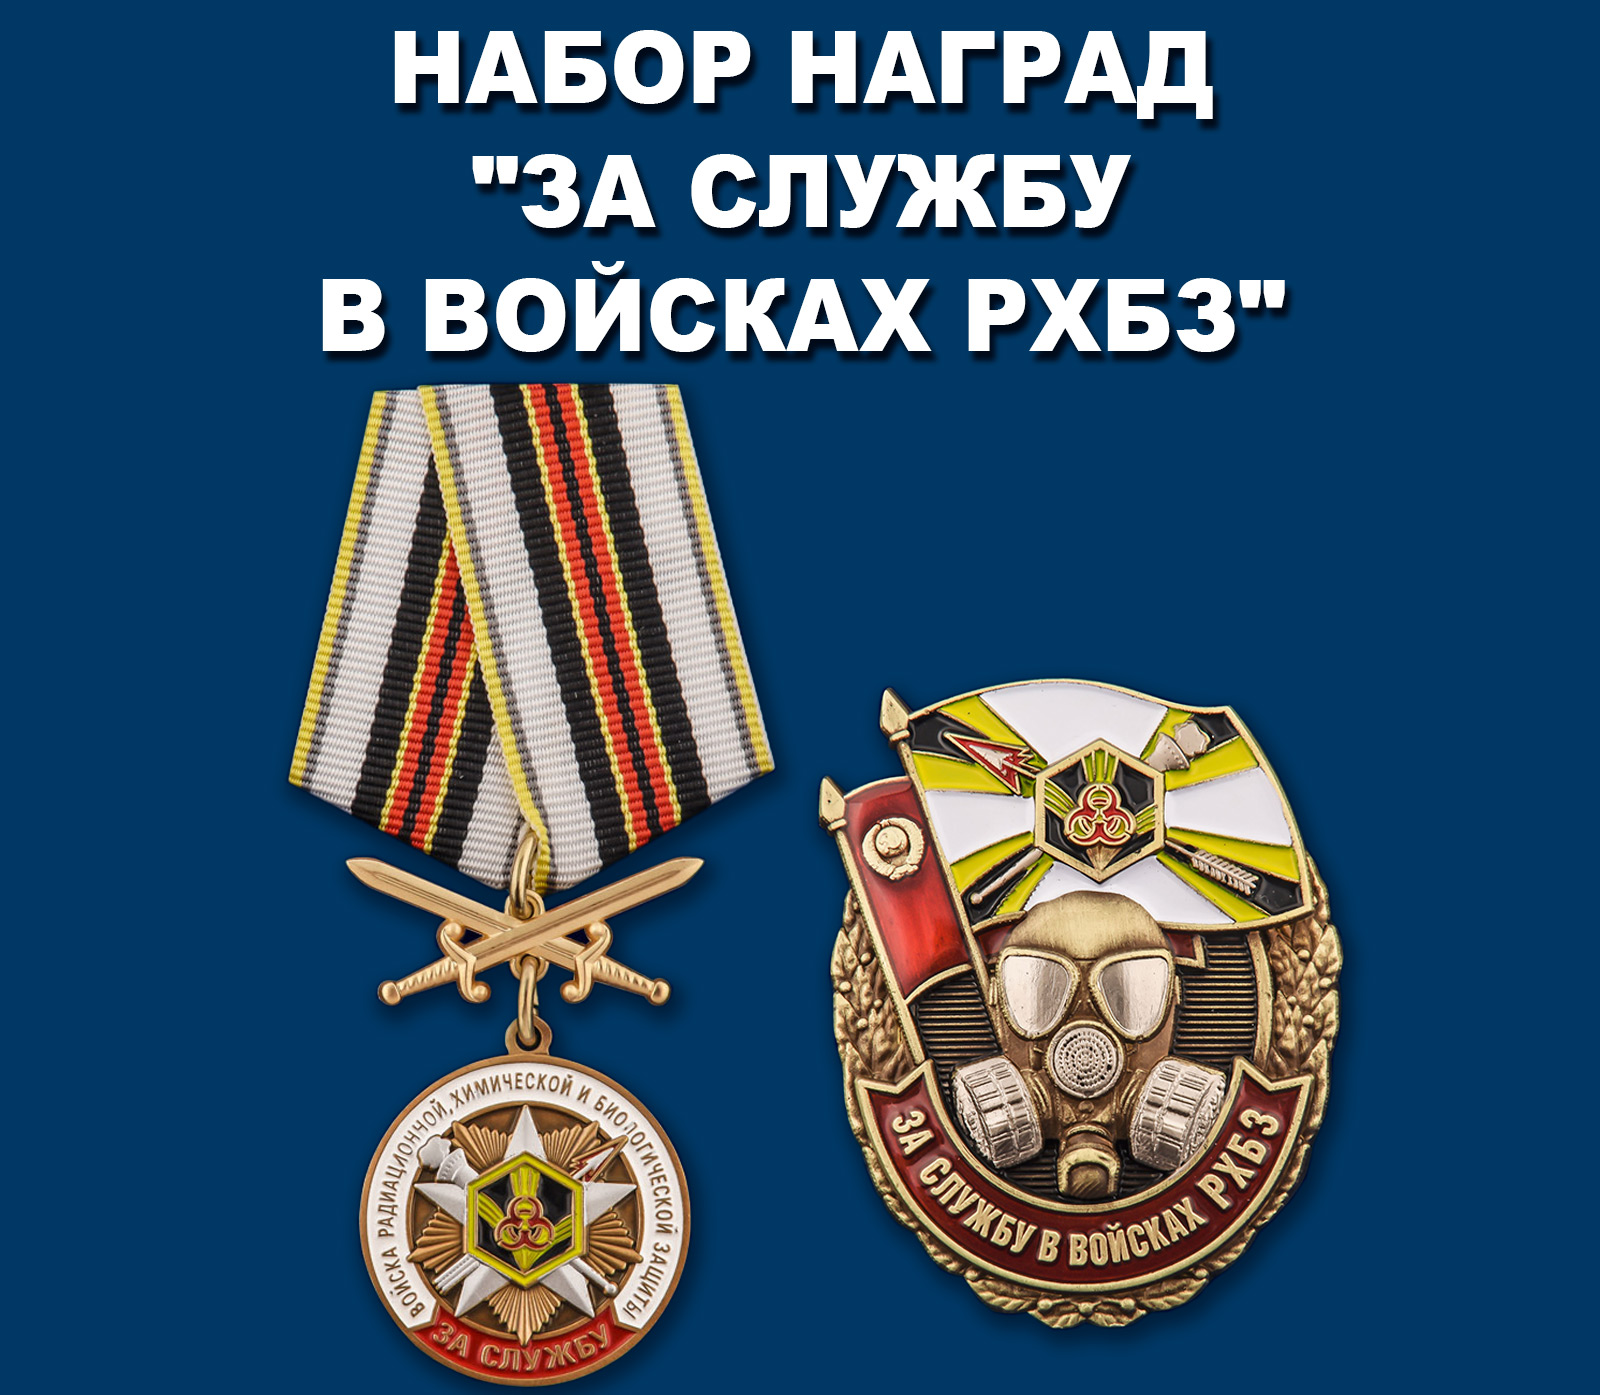 Купить набор наград "За службу в войсках РХБЗ"